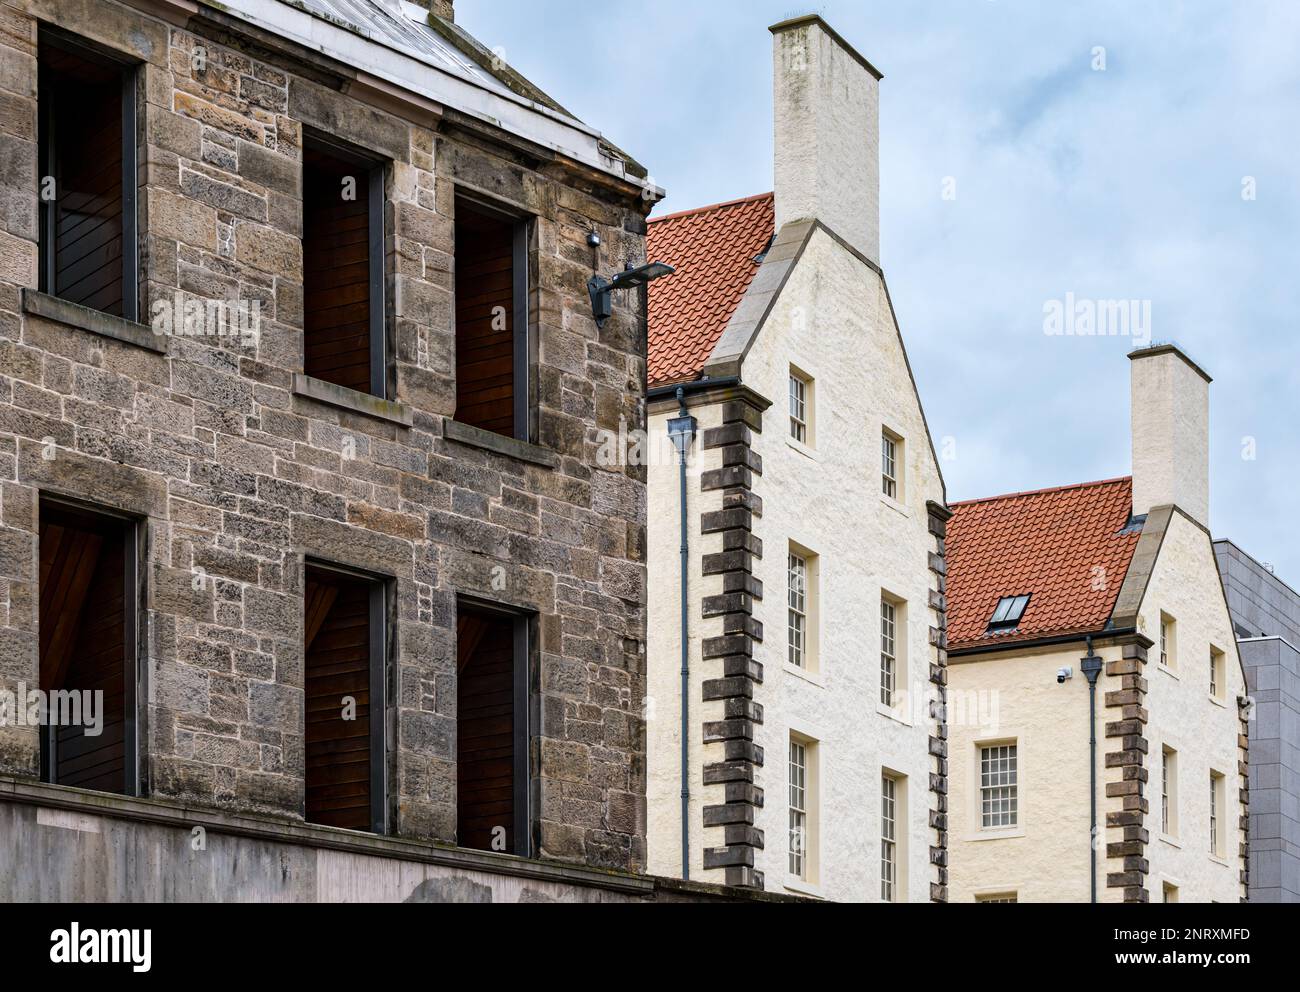 Historisches Gebäude, Queensberry House, jetzt Teil des schottischen parlamentskomplexes, Royal Mile. Edinburgh, Schottland, Großbritannien Stockfoto